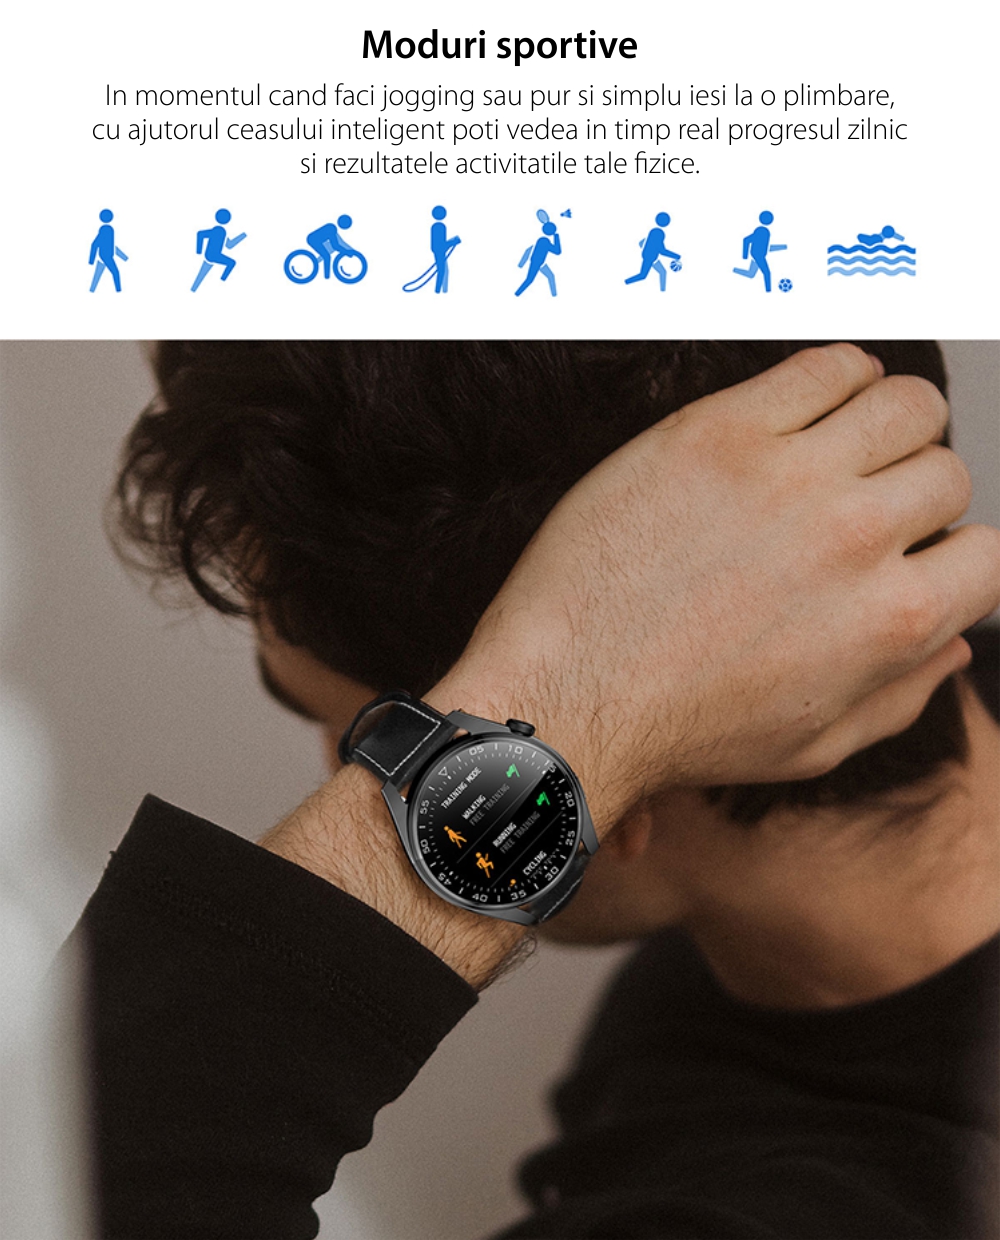 Ceas Smartwatch XK Fitness M103 Pro cu Monitorizare oxigen, Tensiune arteriala, Puls, Somn, Calorii, Pedometru, Sport, Bratara piele, Negru